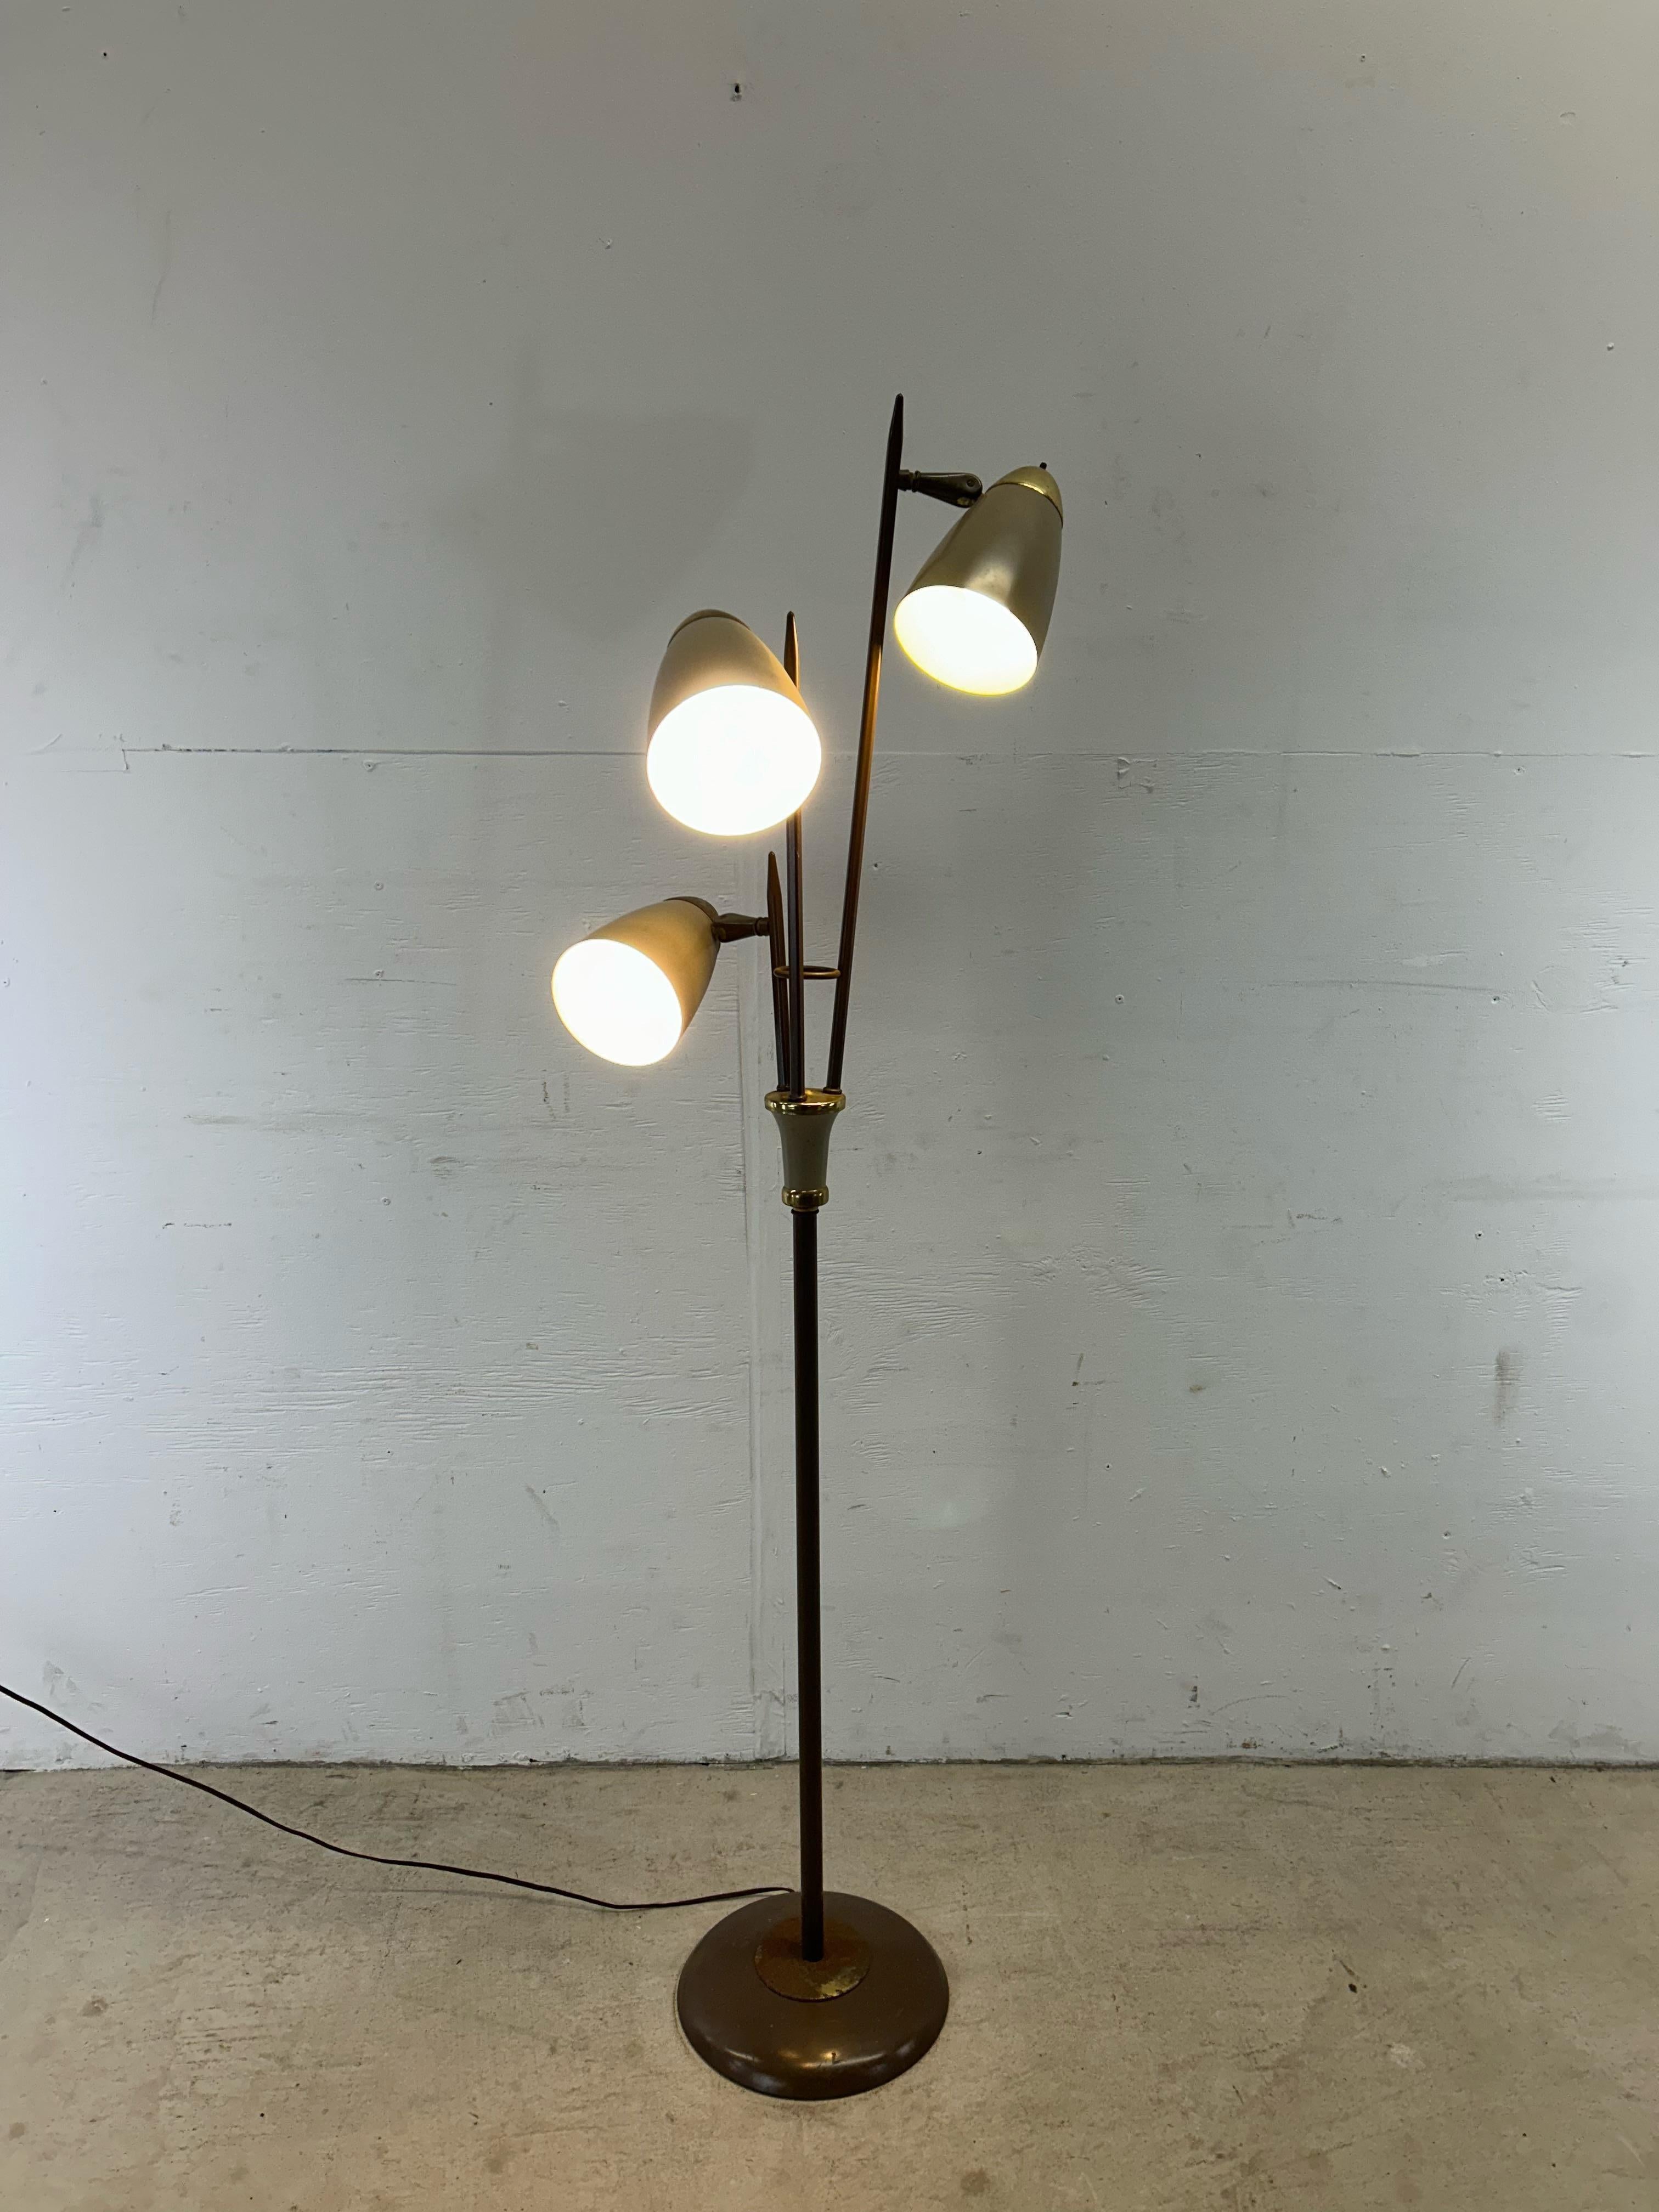 Ce lampadaire moderne du milieu du siècle est doté d'une base en métal peinte en brun et de trois abat-jours en forme d'ogive rehaussés de laiton.  Chaque ampoule peut être contrôlée séparément avec son propre interrupteur.

La base mesure : 11w 11d